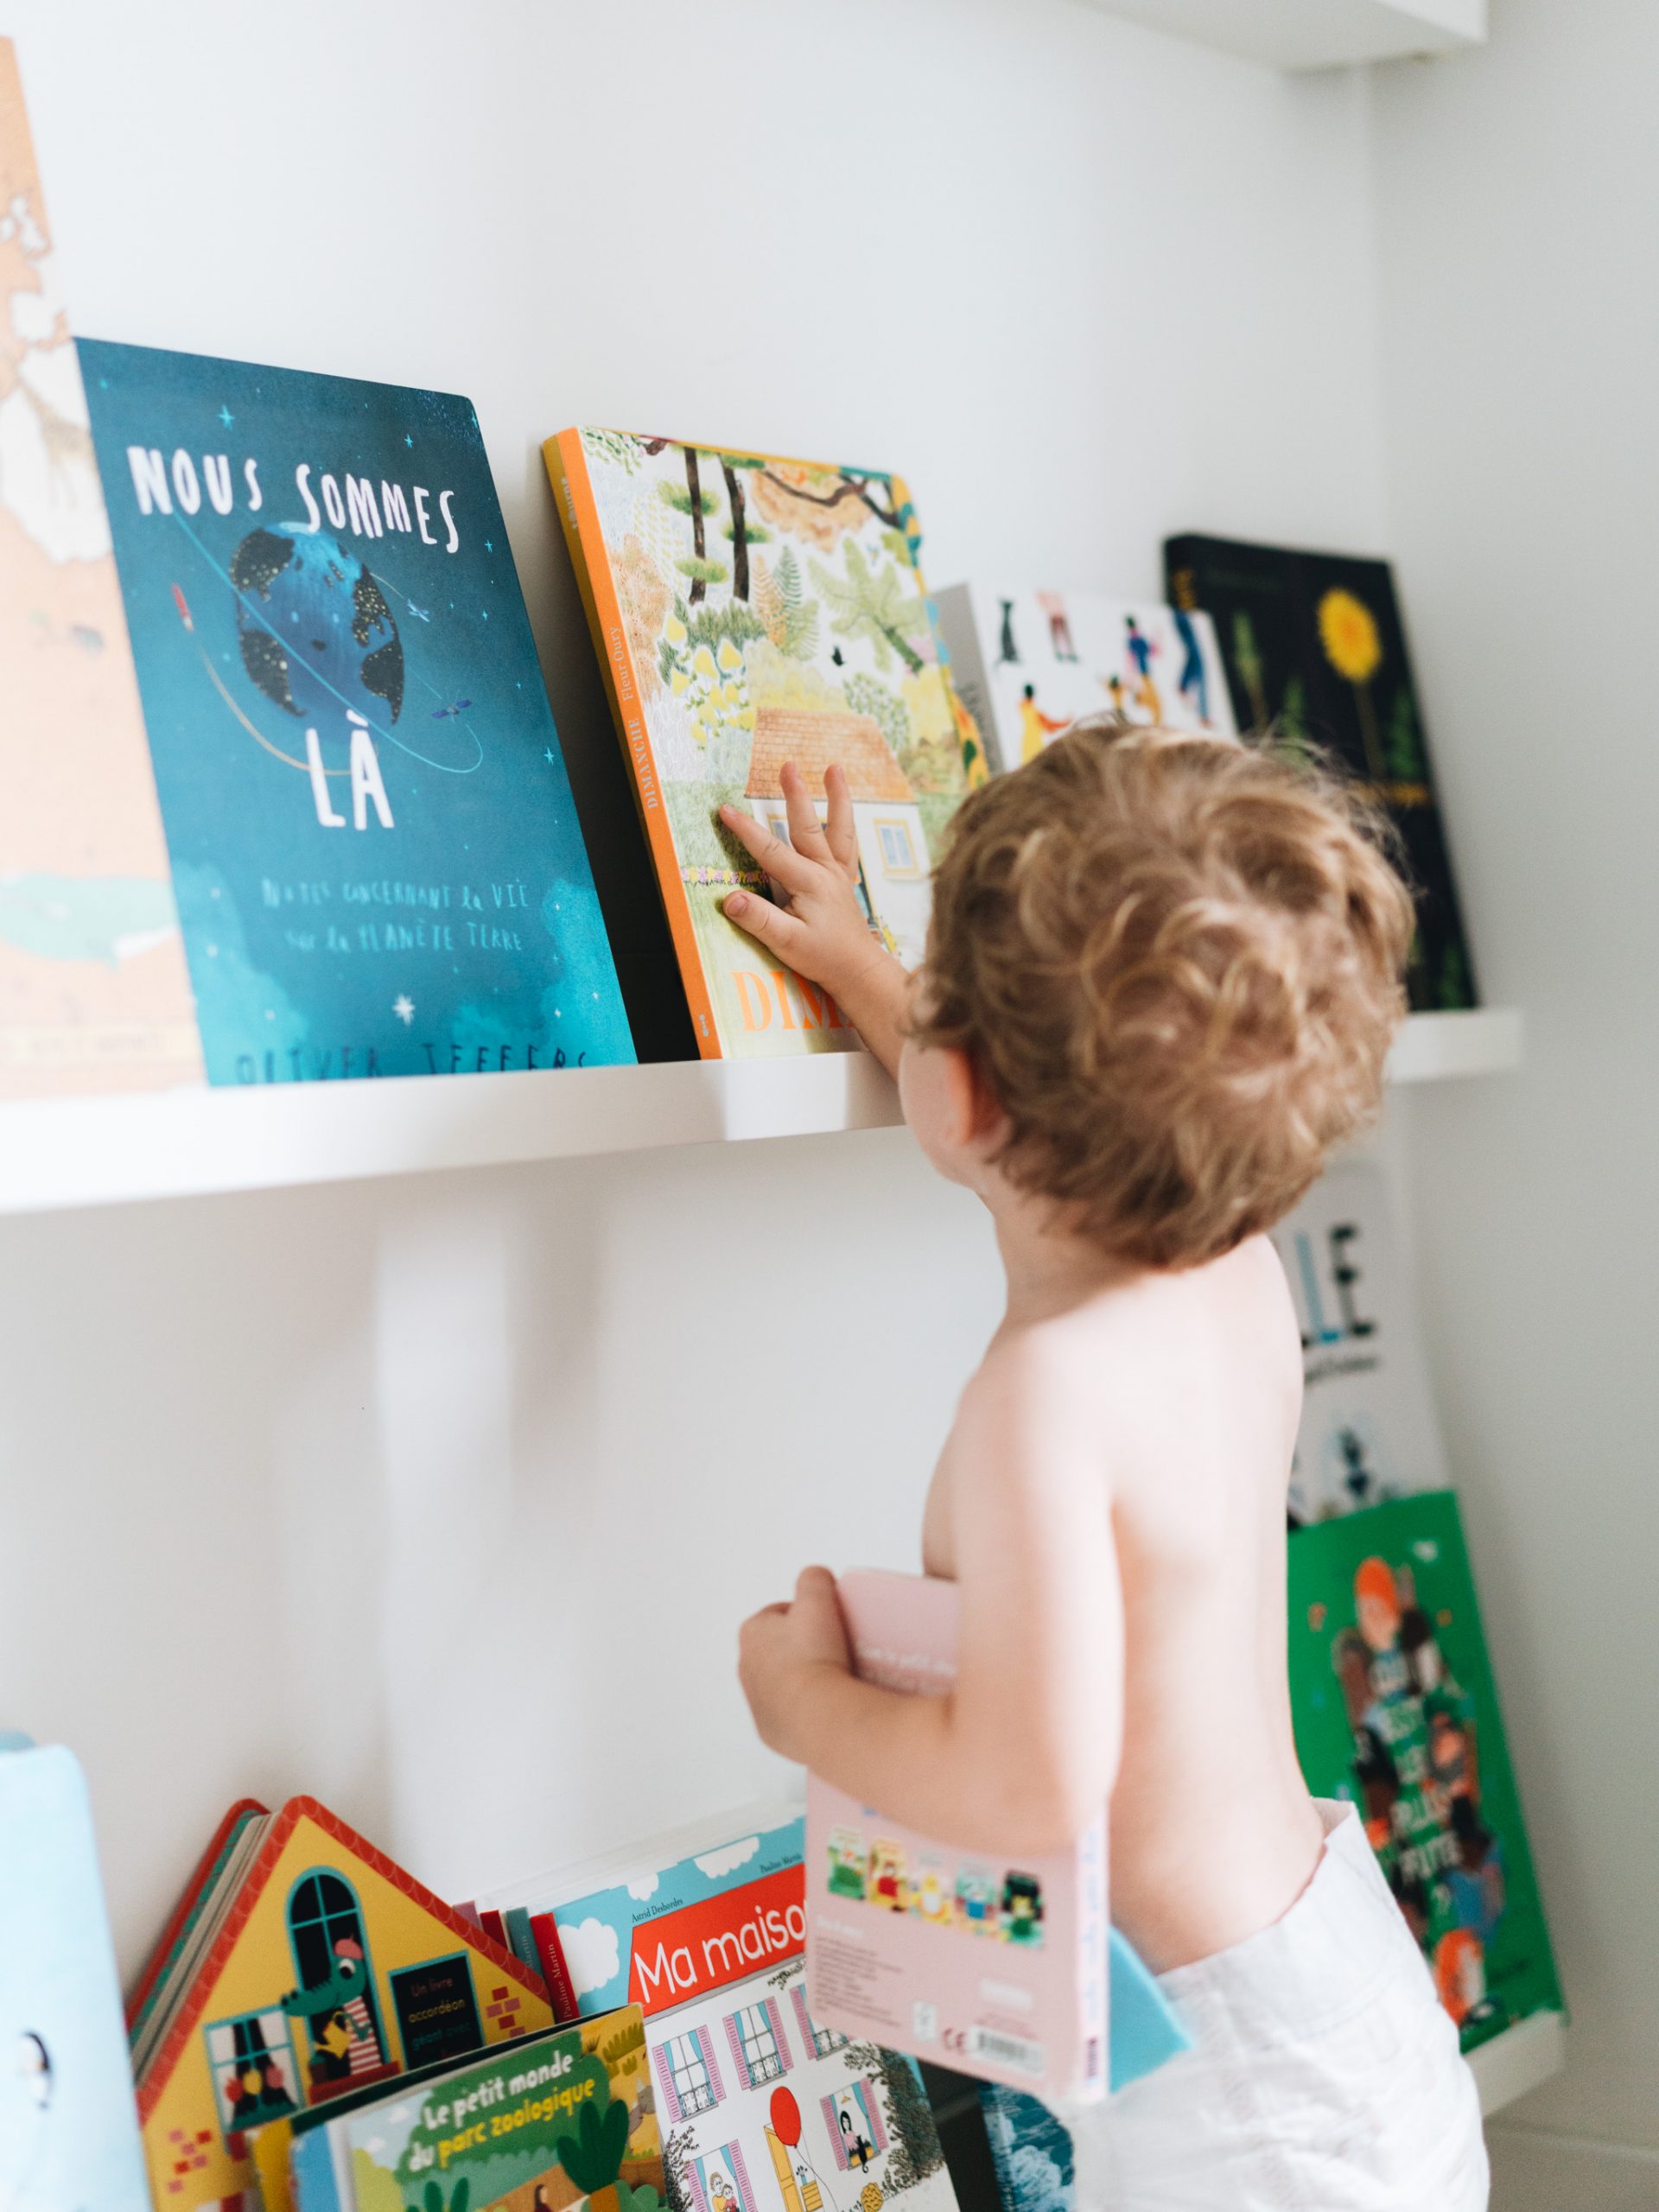  Bébé À 2 Ans - Livres Pour Enfants : Livres